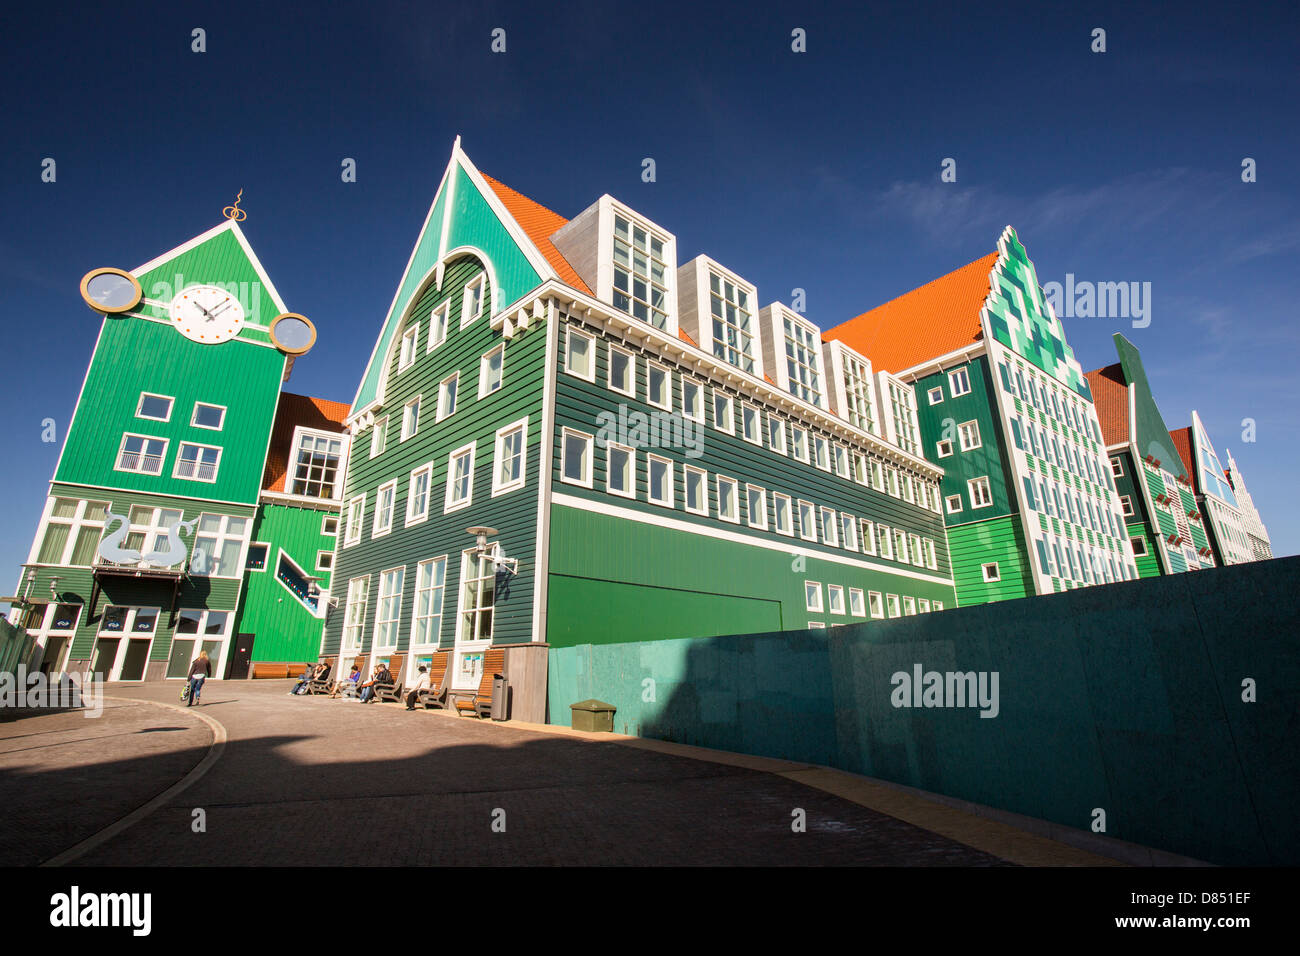 Der ultra trendige, moderne Bahnhof in Zaanstadt, die traditionellen Hausstil Bereich aussehen soll, Stockfoto